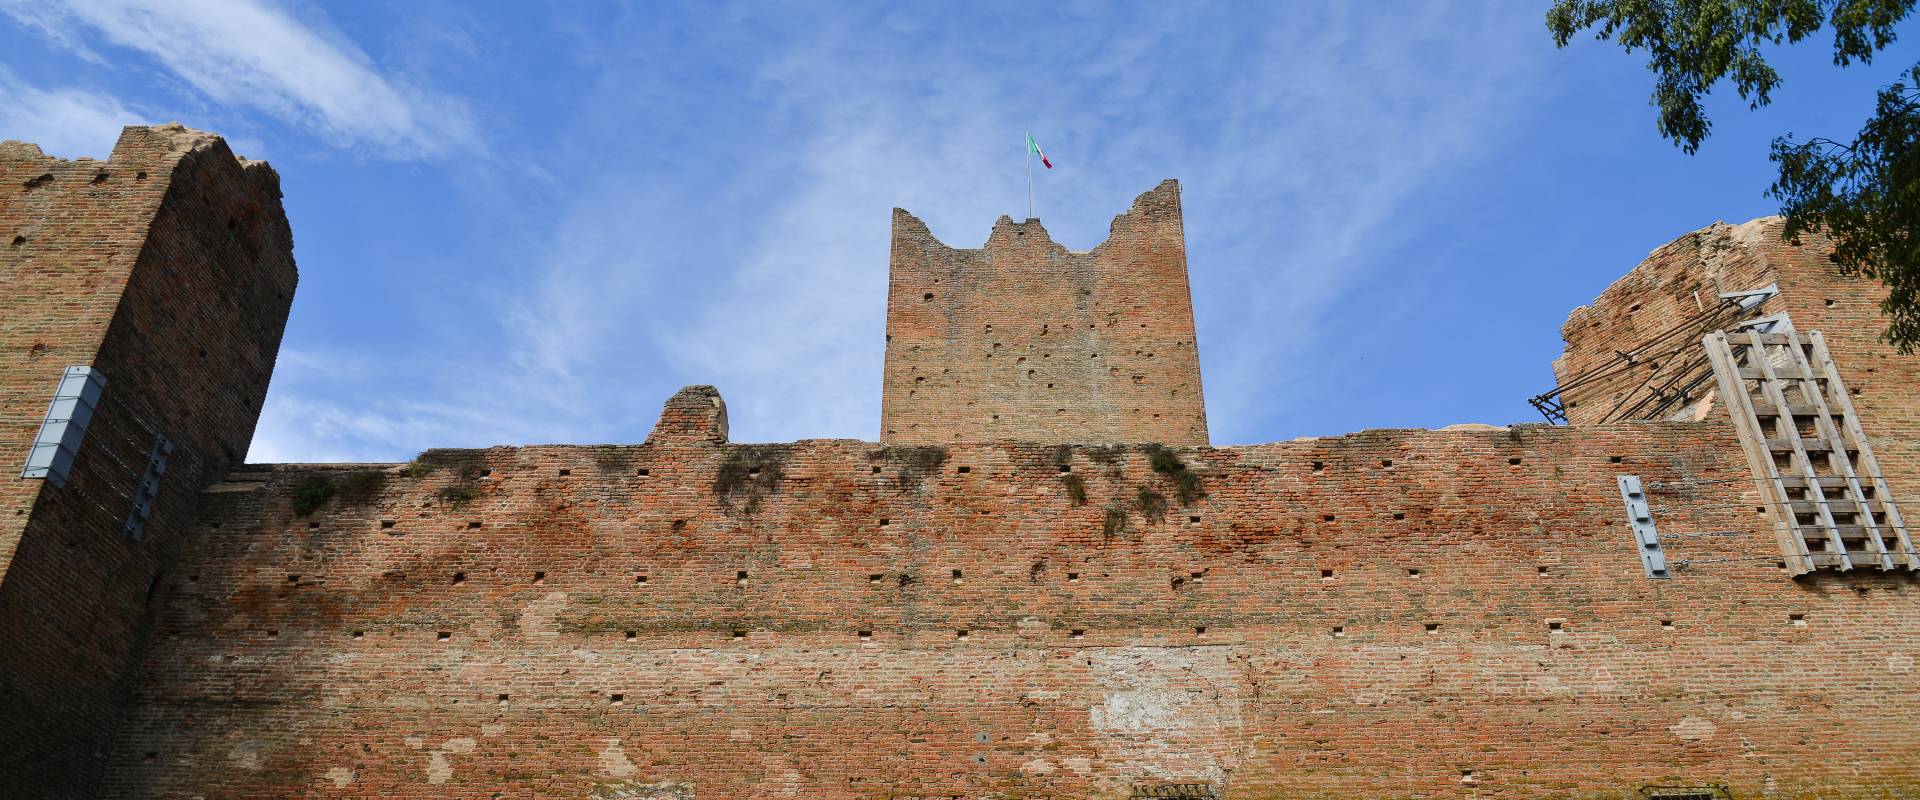 Rocca Medievale foto di SimoneLugarini